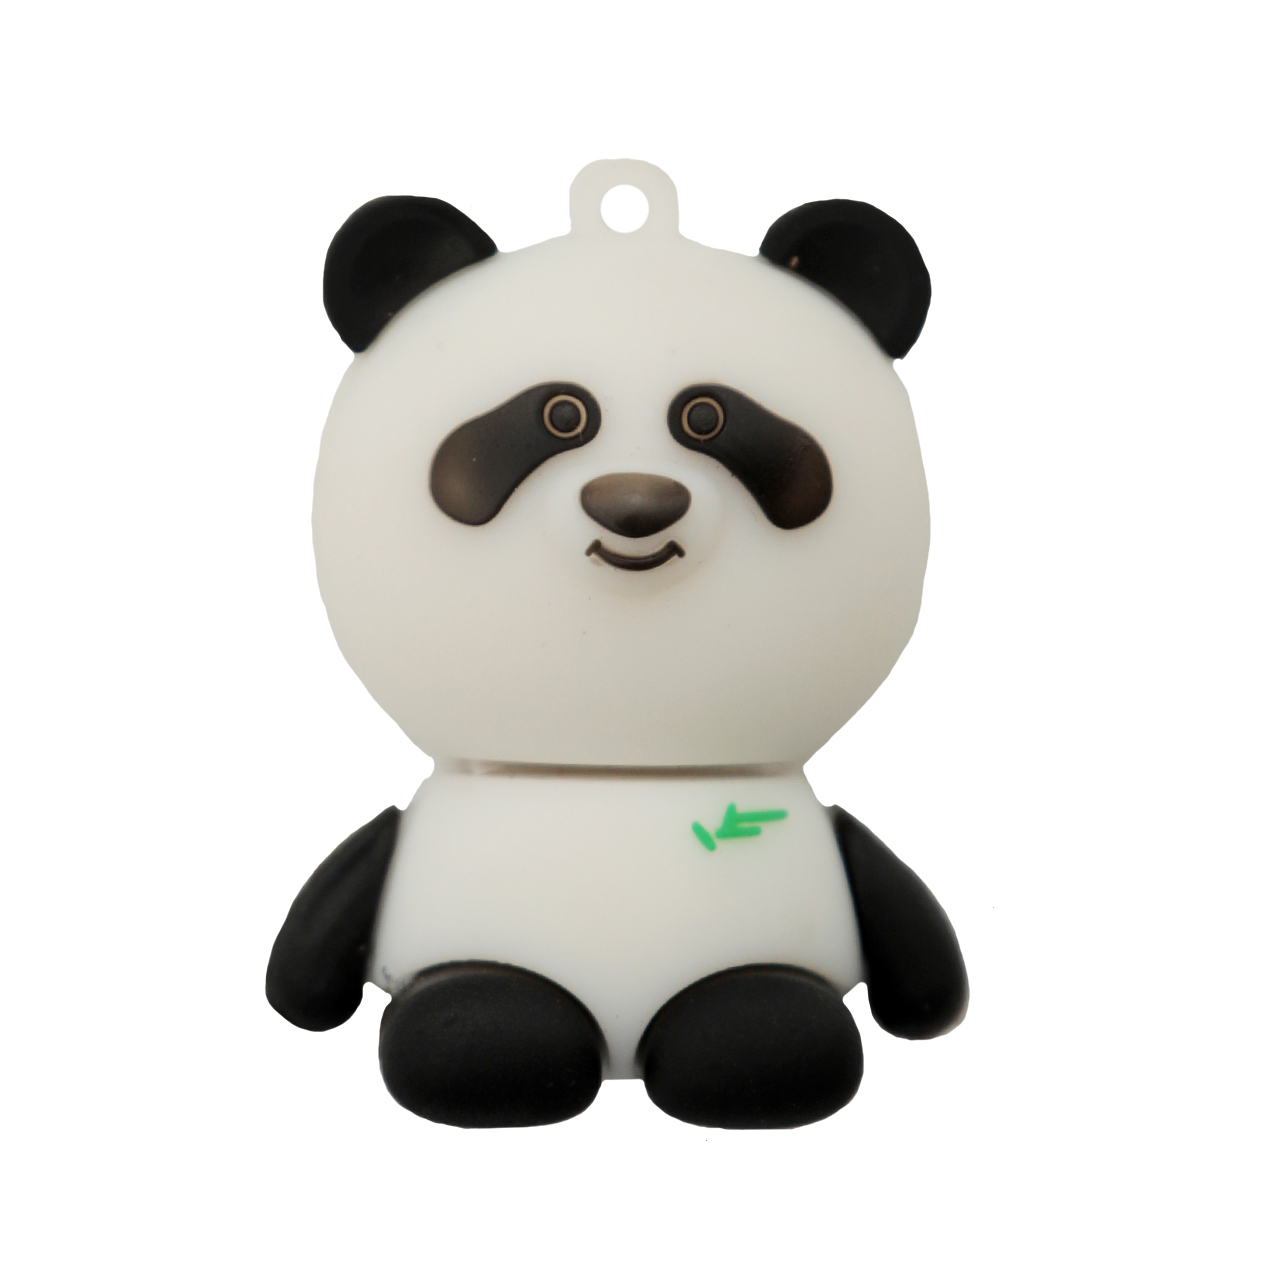 فلش مموری دایا دیتا طرح Panda مدل PF1090 ظرفیت 16 گیگابایت